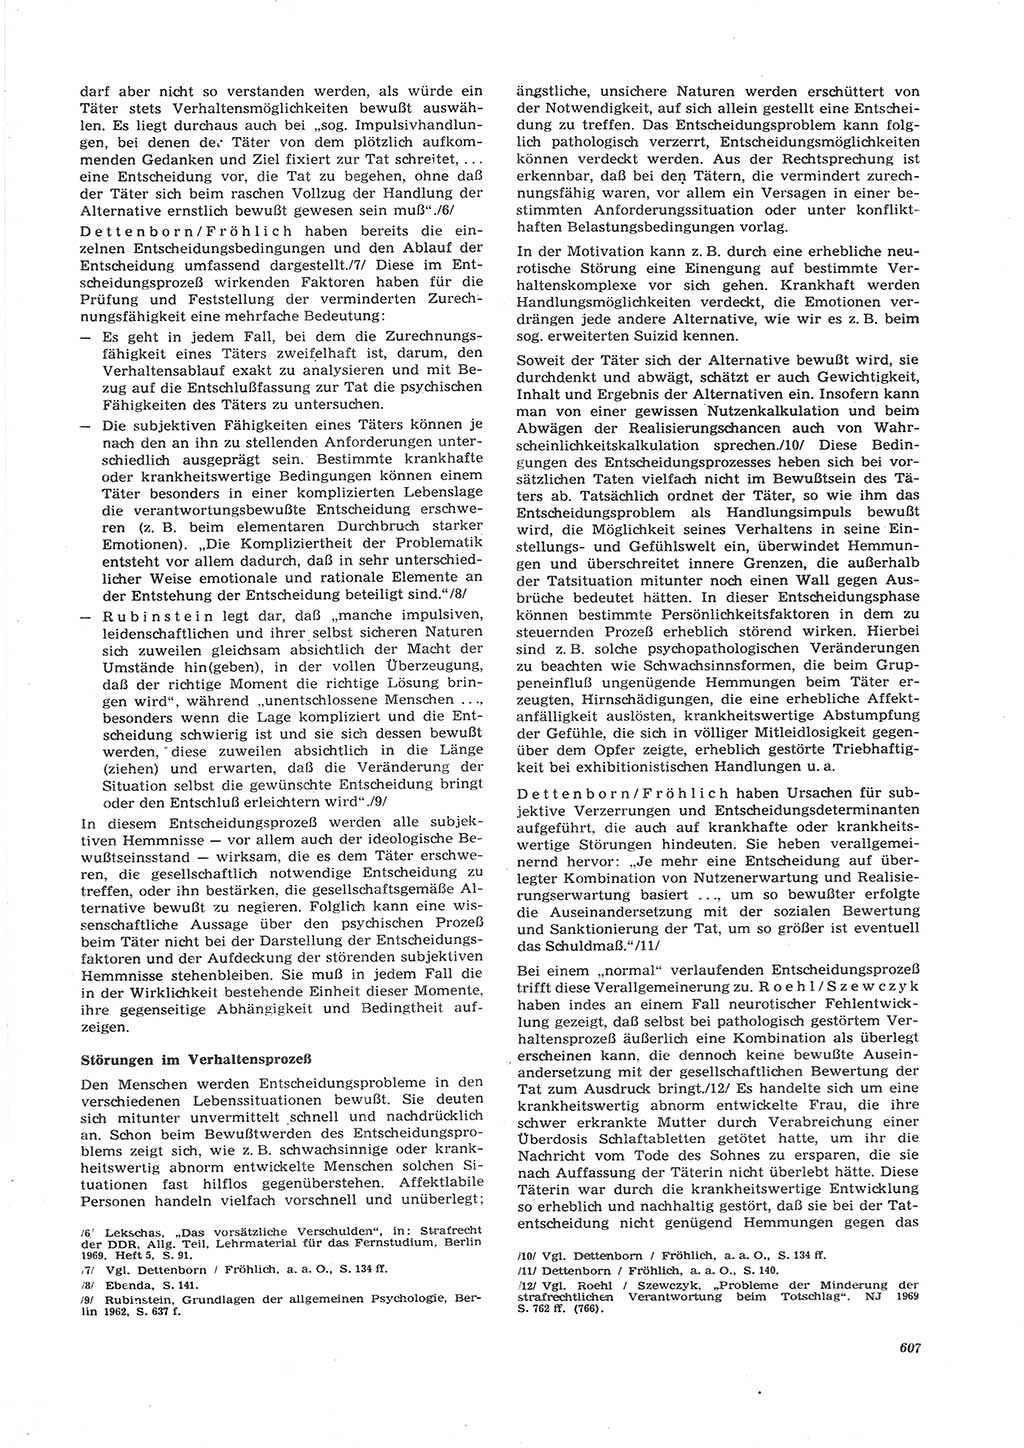 Neue Justiz (NJ), Zeitschrift für Recht und Rechtswissenschaft [Deutsche Demokratische Republik (DDR)], 26. Jahrgang 1972, Seite 607 (NJ DDR 1972, S. 607)